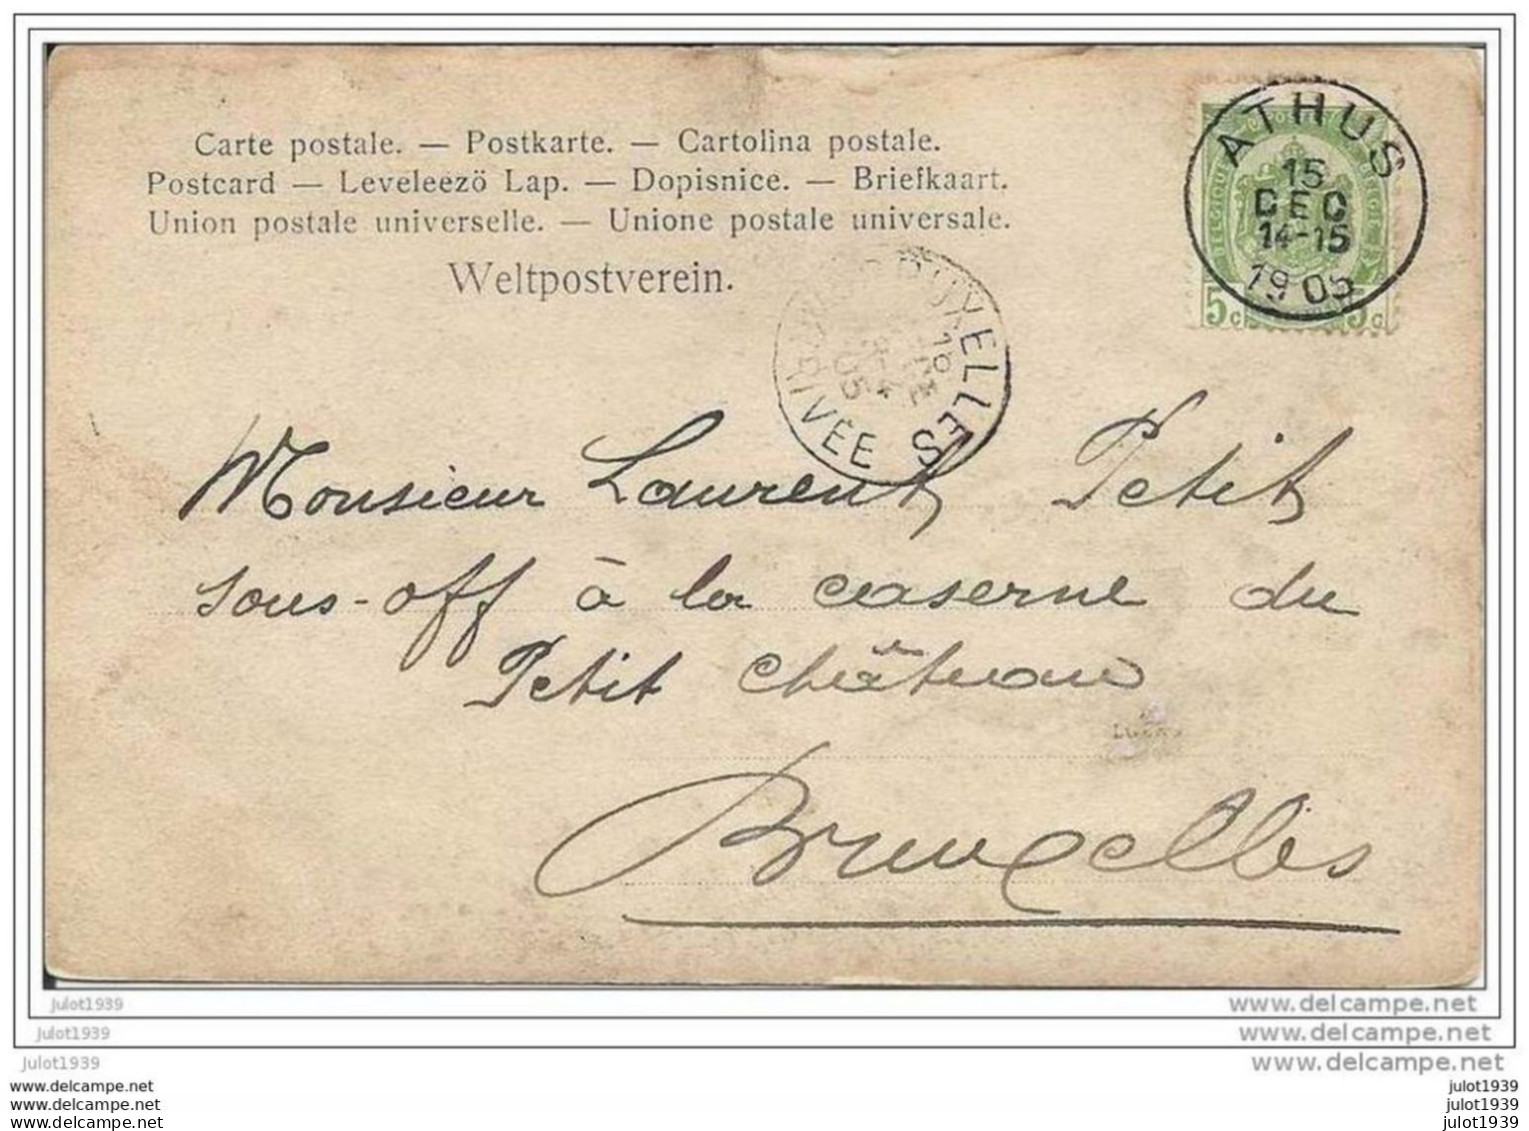 MUSSY . ATHUS ..-- Carte - Photo . 1905 Vers BRUXELLES ( Mr Laurent PETIT, Caserne Petit Château ) . Voir Verso . - Musson